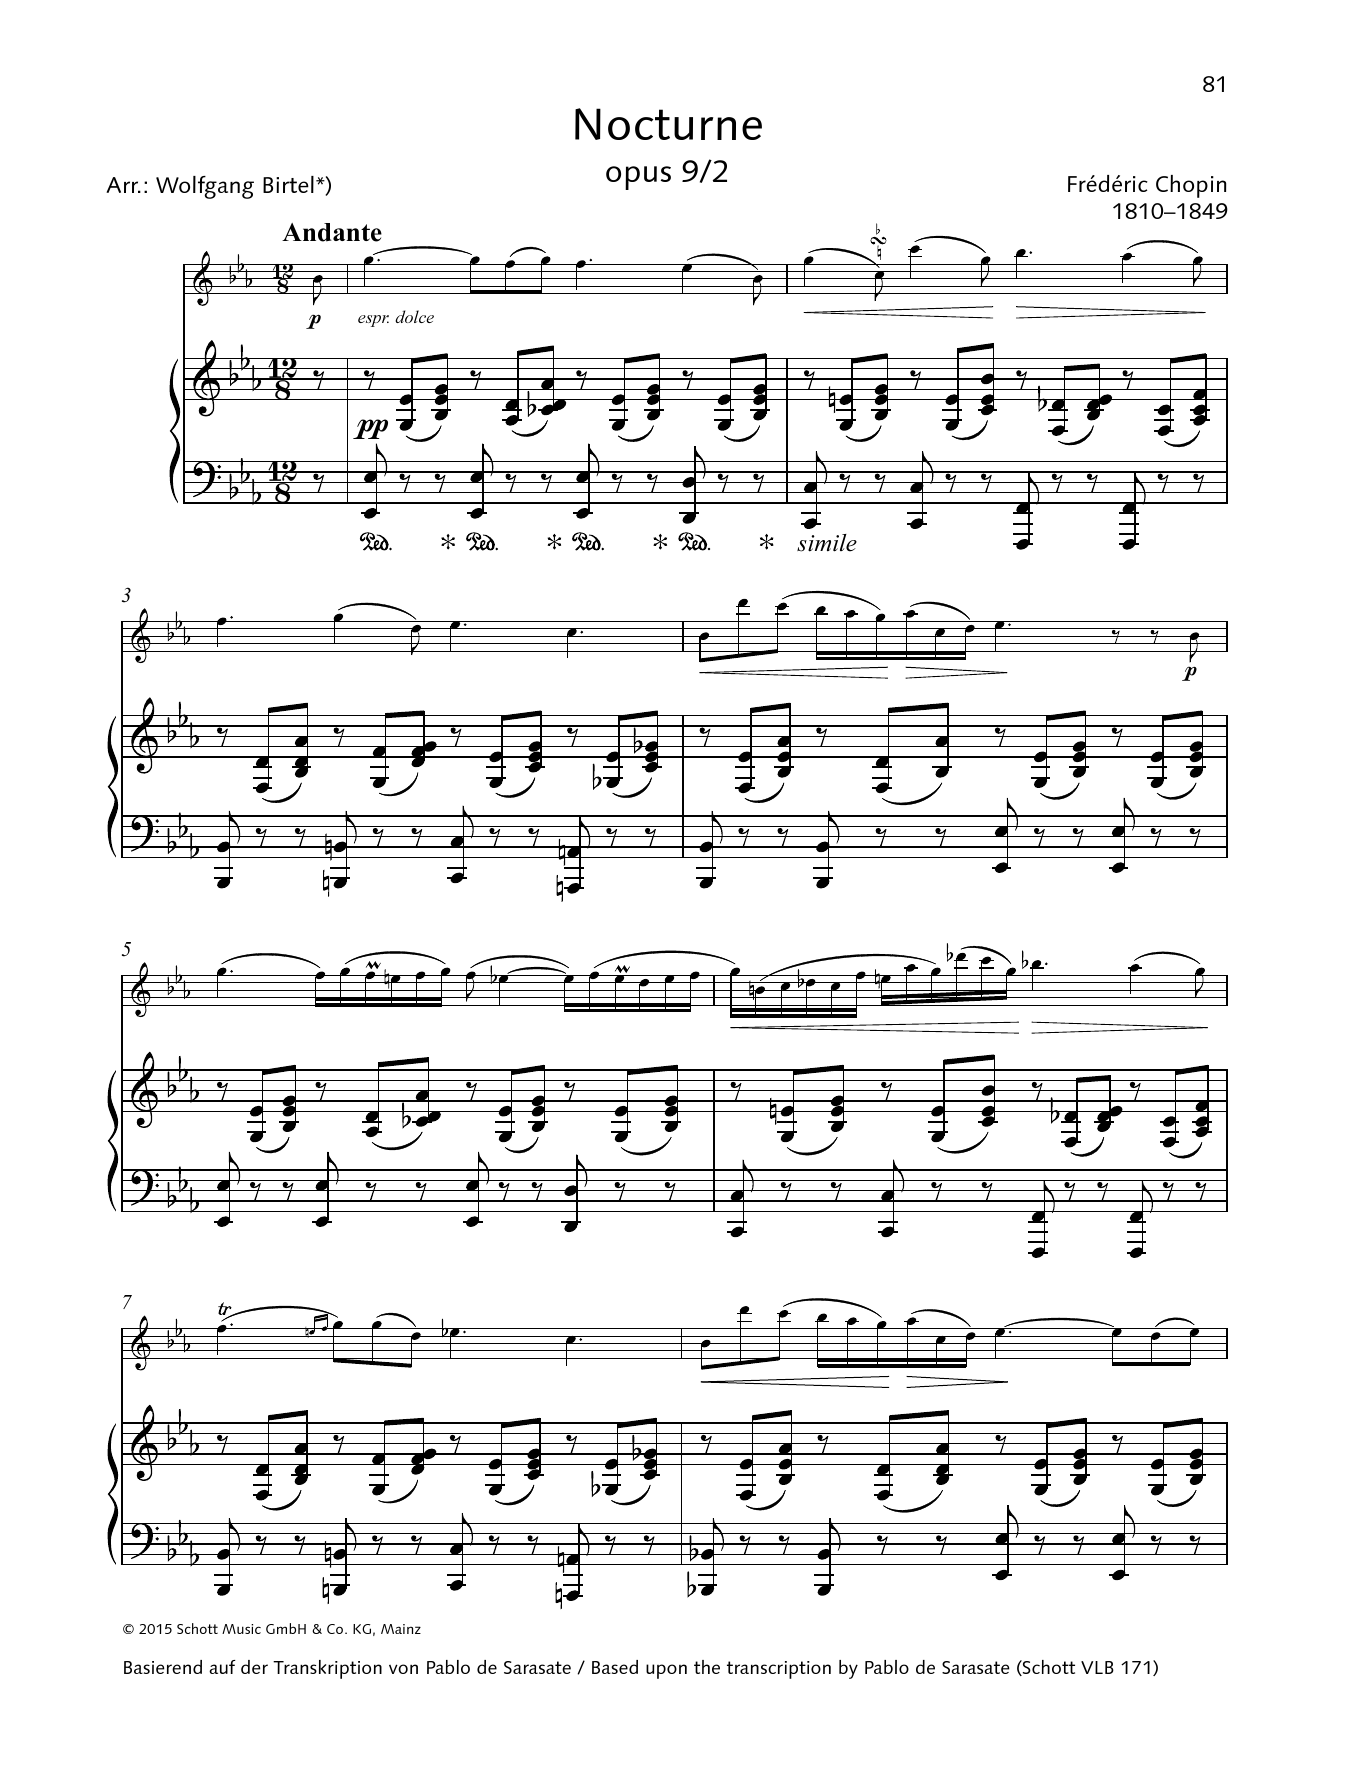 Nocturne E-flat major (String Solo) von Frdric Chopin